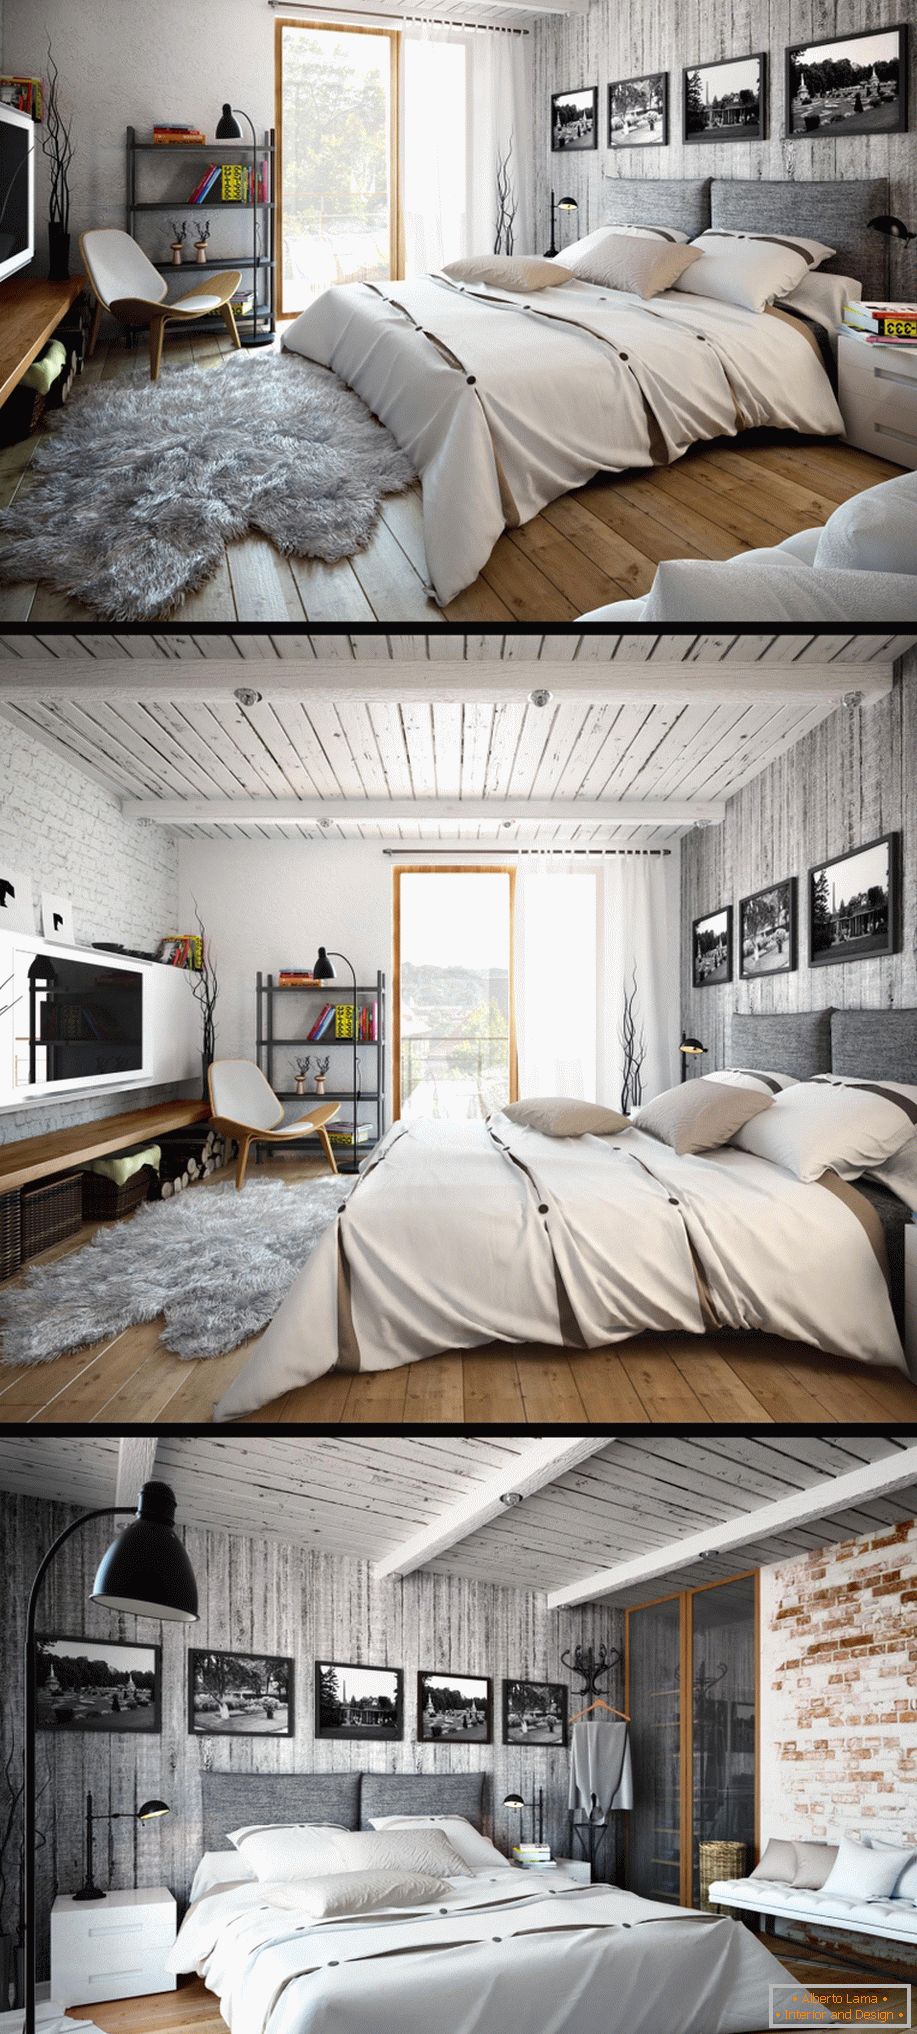 Exemplo de design de interiores de um pequeno quarto na foto